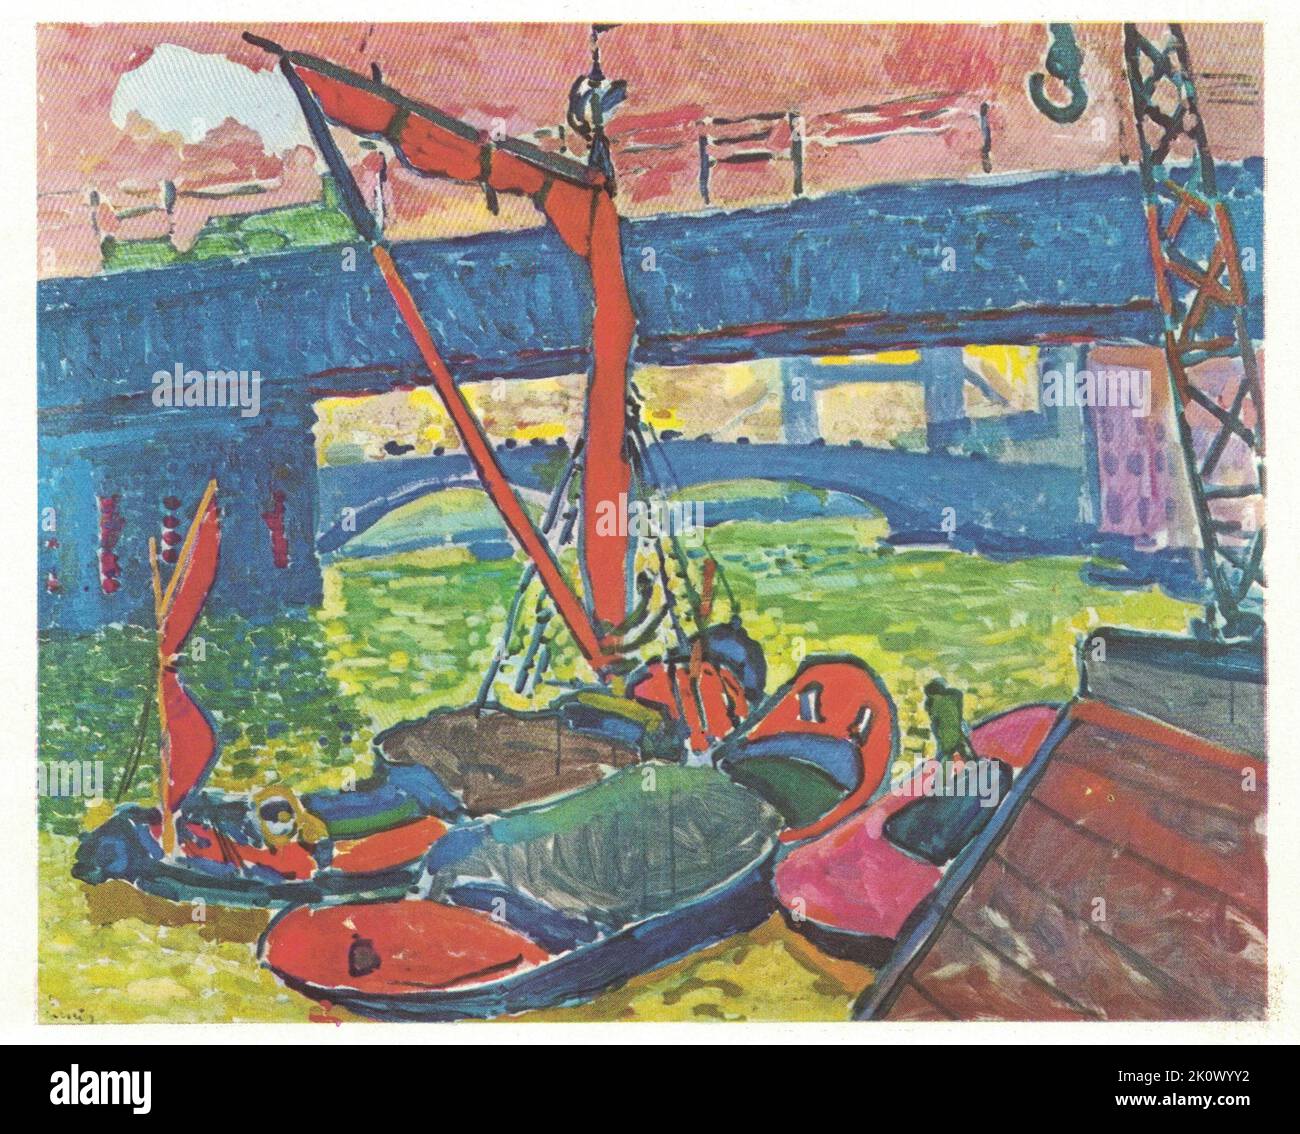 Sous le pont de Londres, 1906. Peinture par André Derain. André Derain est surtout connu pour ses contributions aux développements du Fauvism et du Cubisme, deux mouvements d'avant-garde depuis le début du siècle 20th. Derain est né sur 17 juin 1880 à Chatou, juste à l'extérieur de Paris. Il commence sa formation en assistant à des cours de peinture sous la direction du symboliste français Eugène carrière à l'Académie carrière (1898-1899). Pendant son séjour à l'école, il frise Henri Matisse, et en 1900, il rencontre Maurice de Vlaminck, avec qui il partage plus tard un studio. Les trois ont souvent peint ensemble, et étaient des figures instrumentales dans Banque D'Images